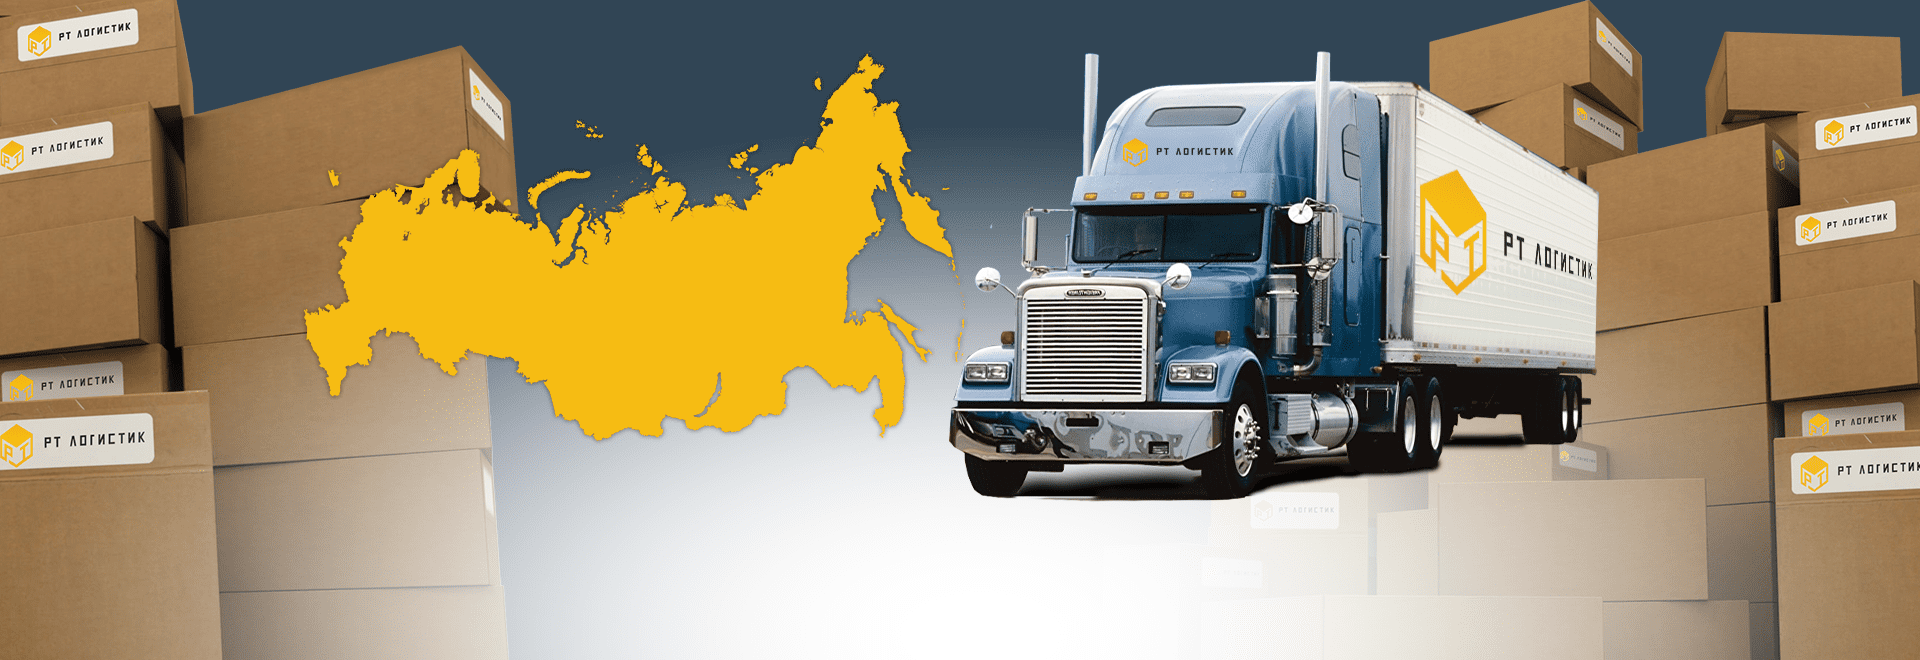 Экспресс доставка грузов по России